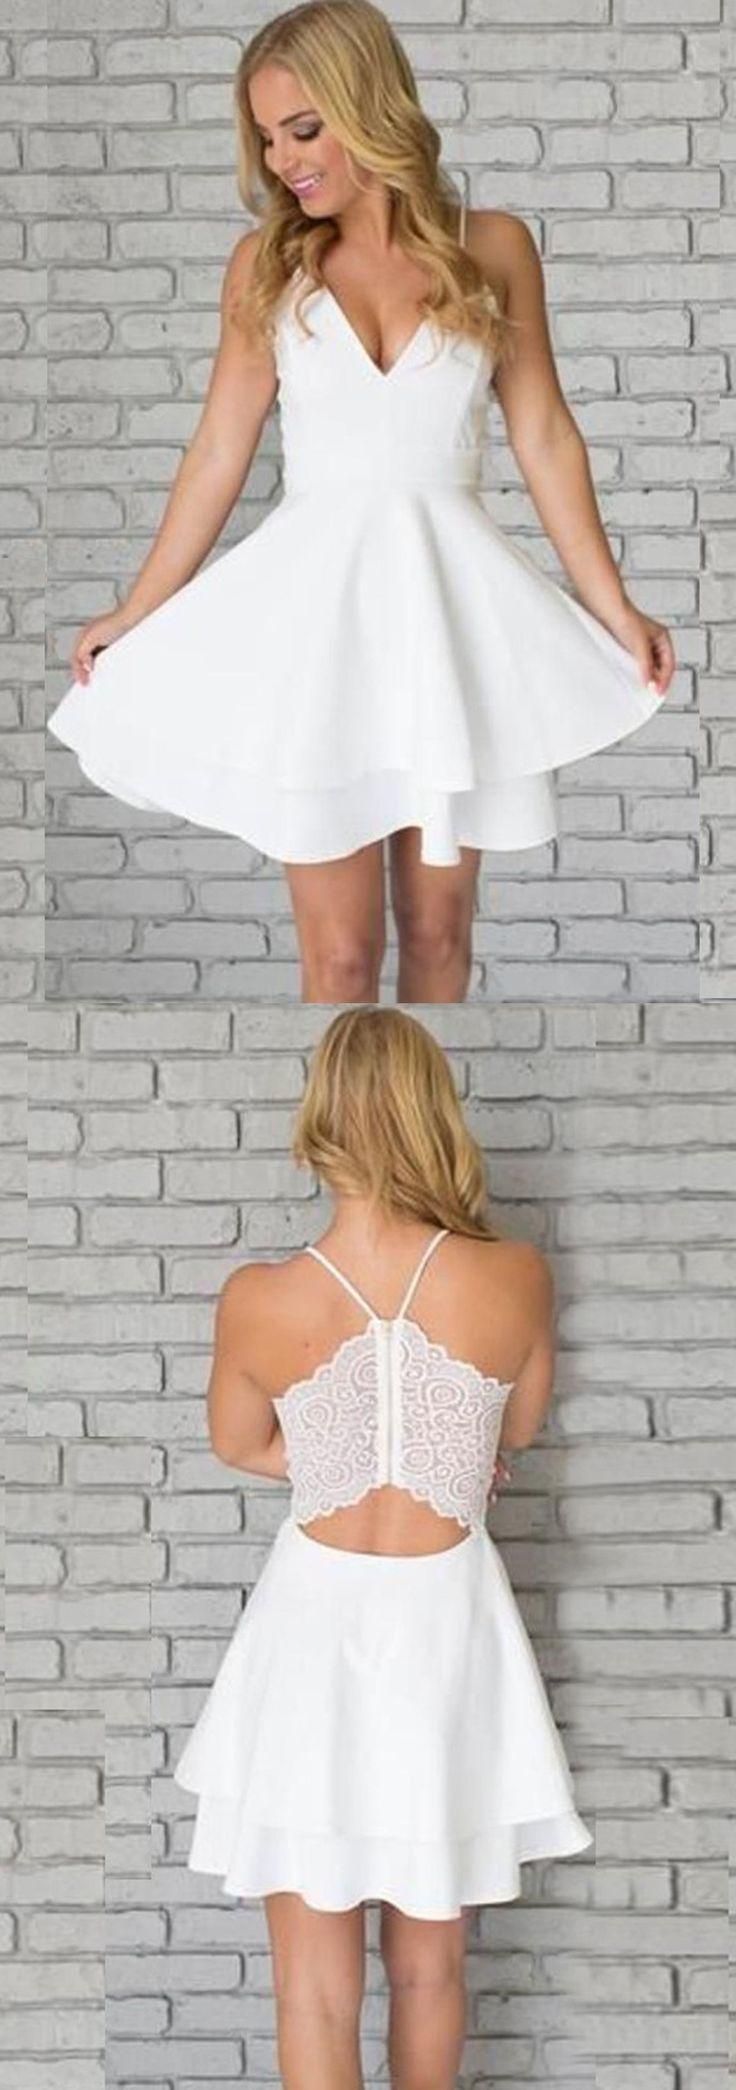 زفاف - A-Line Spaghetti Straps Short White Satin Homecoming Dress With Lace